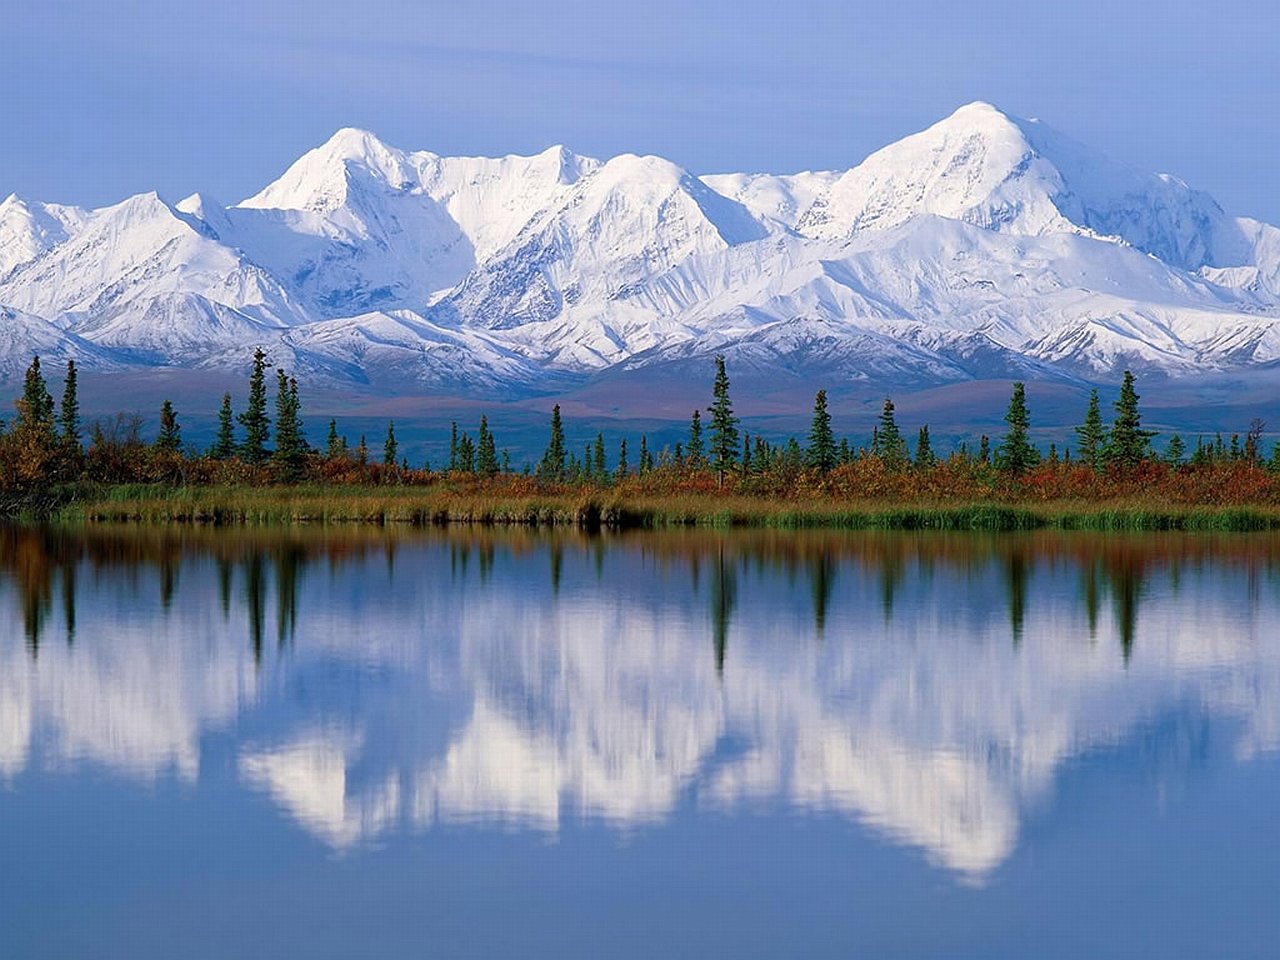 Климат северной америки зимой и летом. Национальный парк Денали Аляска. Северная Америка Аляска. Национальный парк Денали, штат Аляска. Кордильеры Аляски.